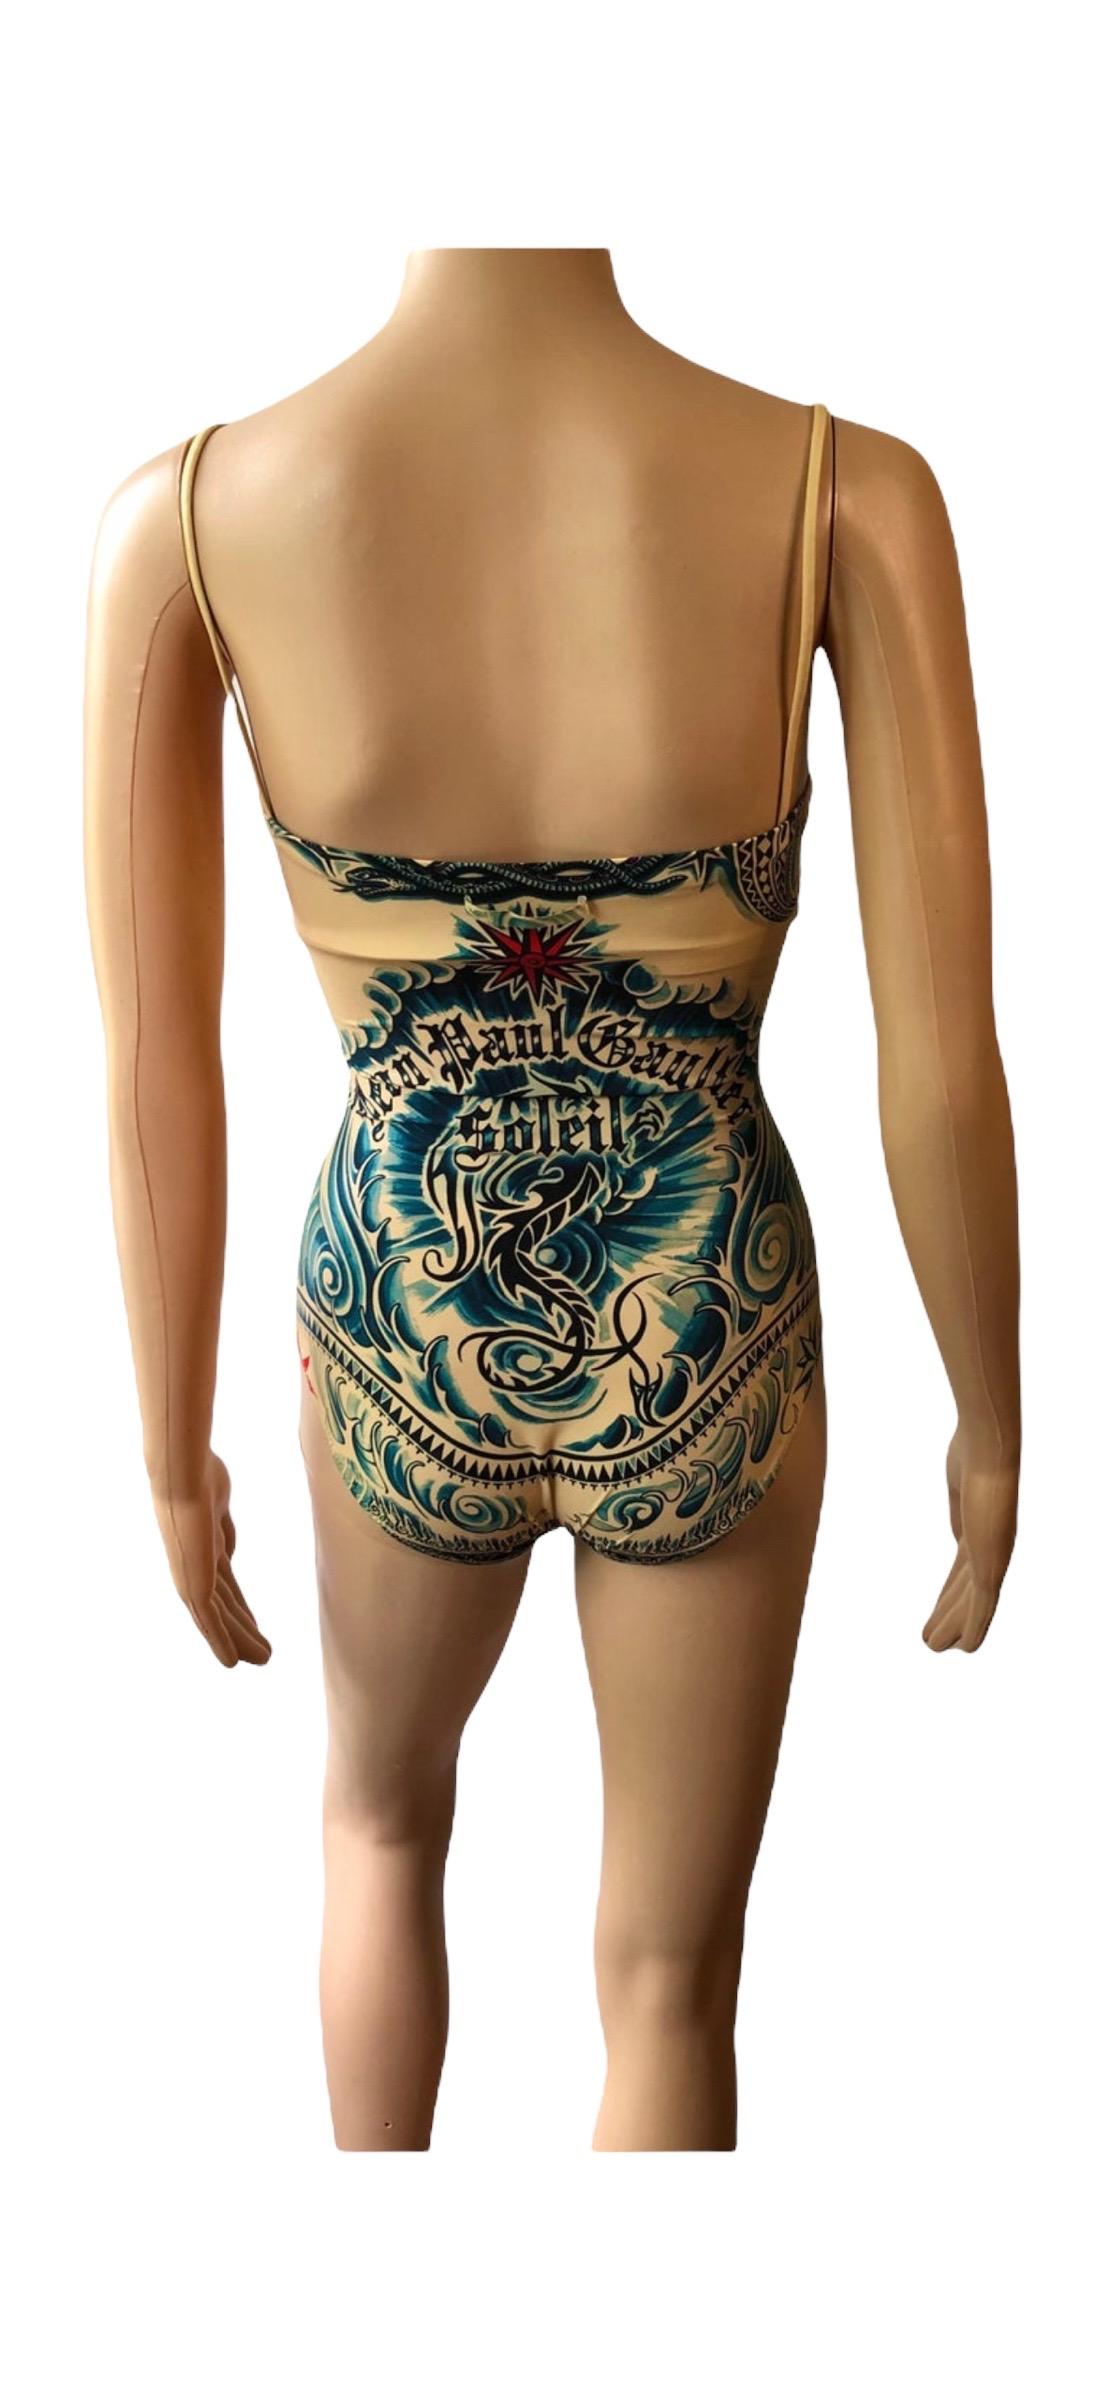 Jean Paul Gaultier Soleil Tattoo Print Bodysuit Swimwear Swimsuit 5